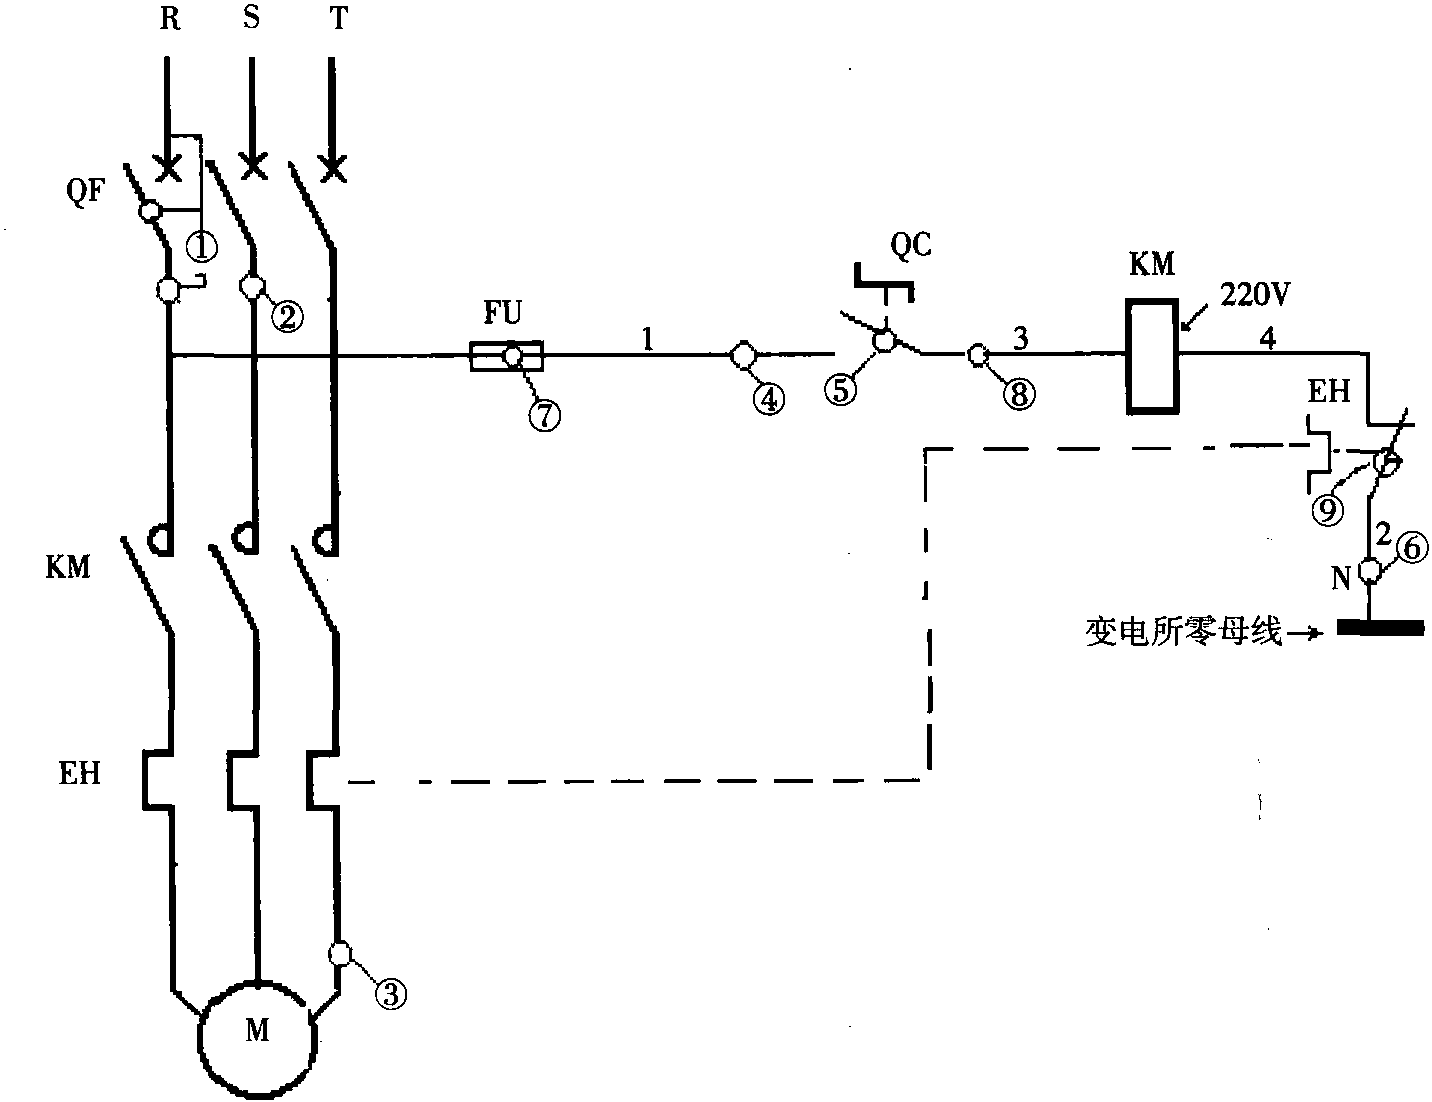 三、转换开关控制接触器启停电动机的控制电路 (图1-3)